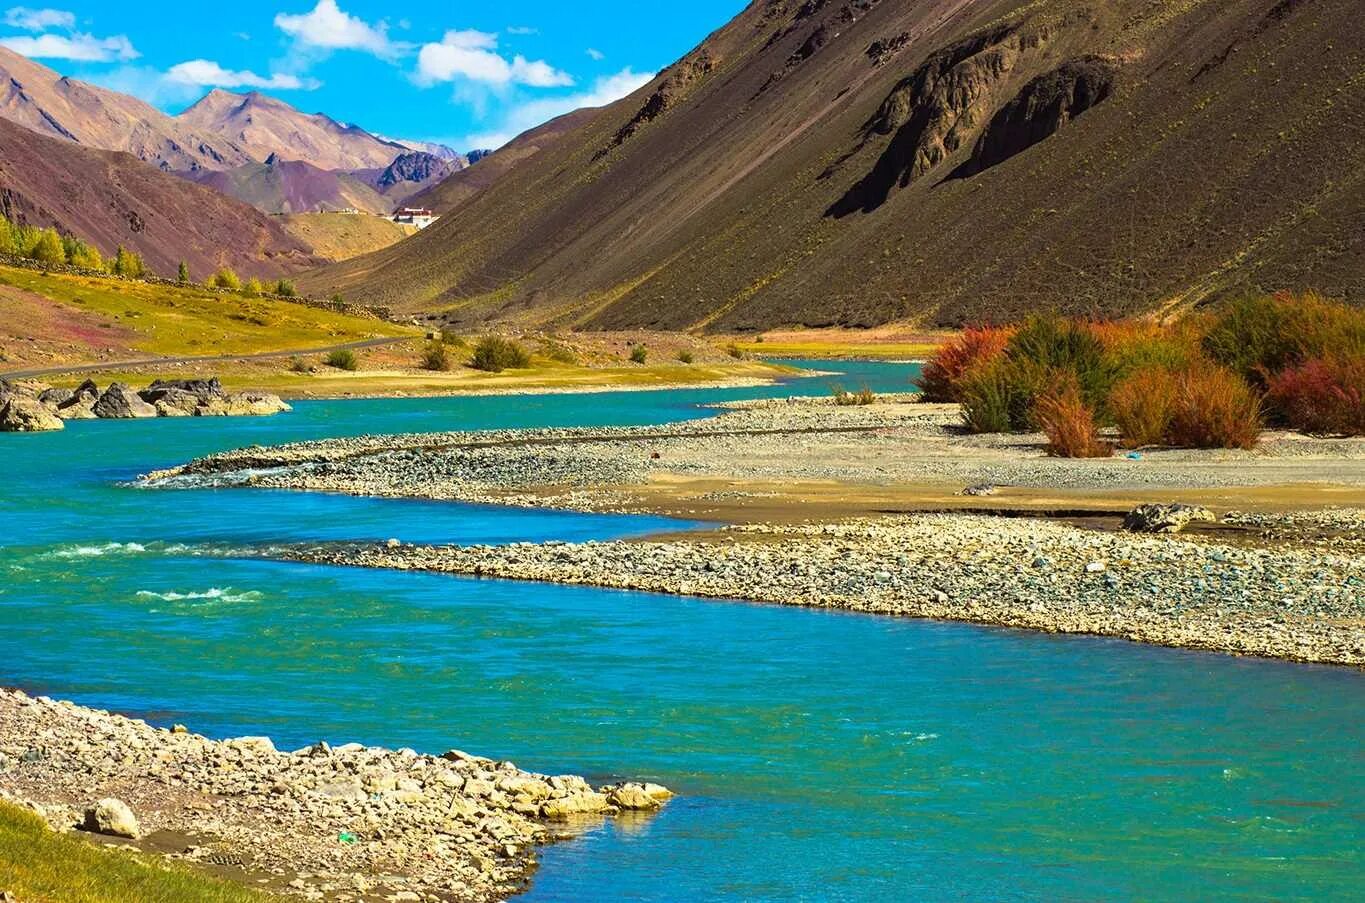 Реки берущие начало в гималаях. Пакистан река инд. Долина реки инд Пакистан. Река инд в Индии. Долина реки инд в Индии.